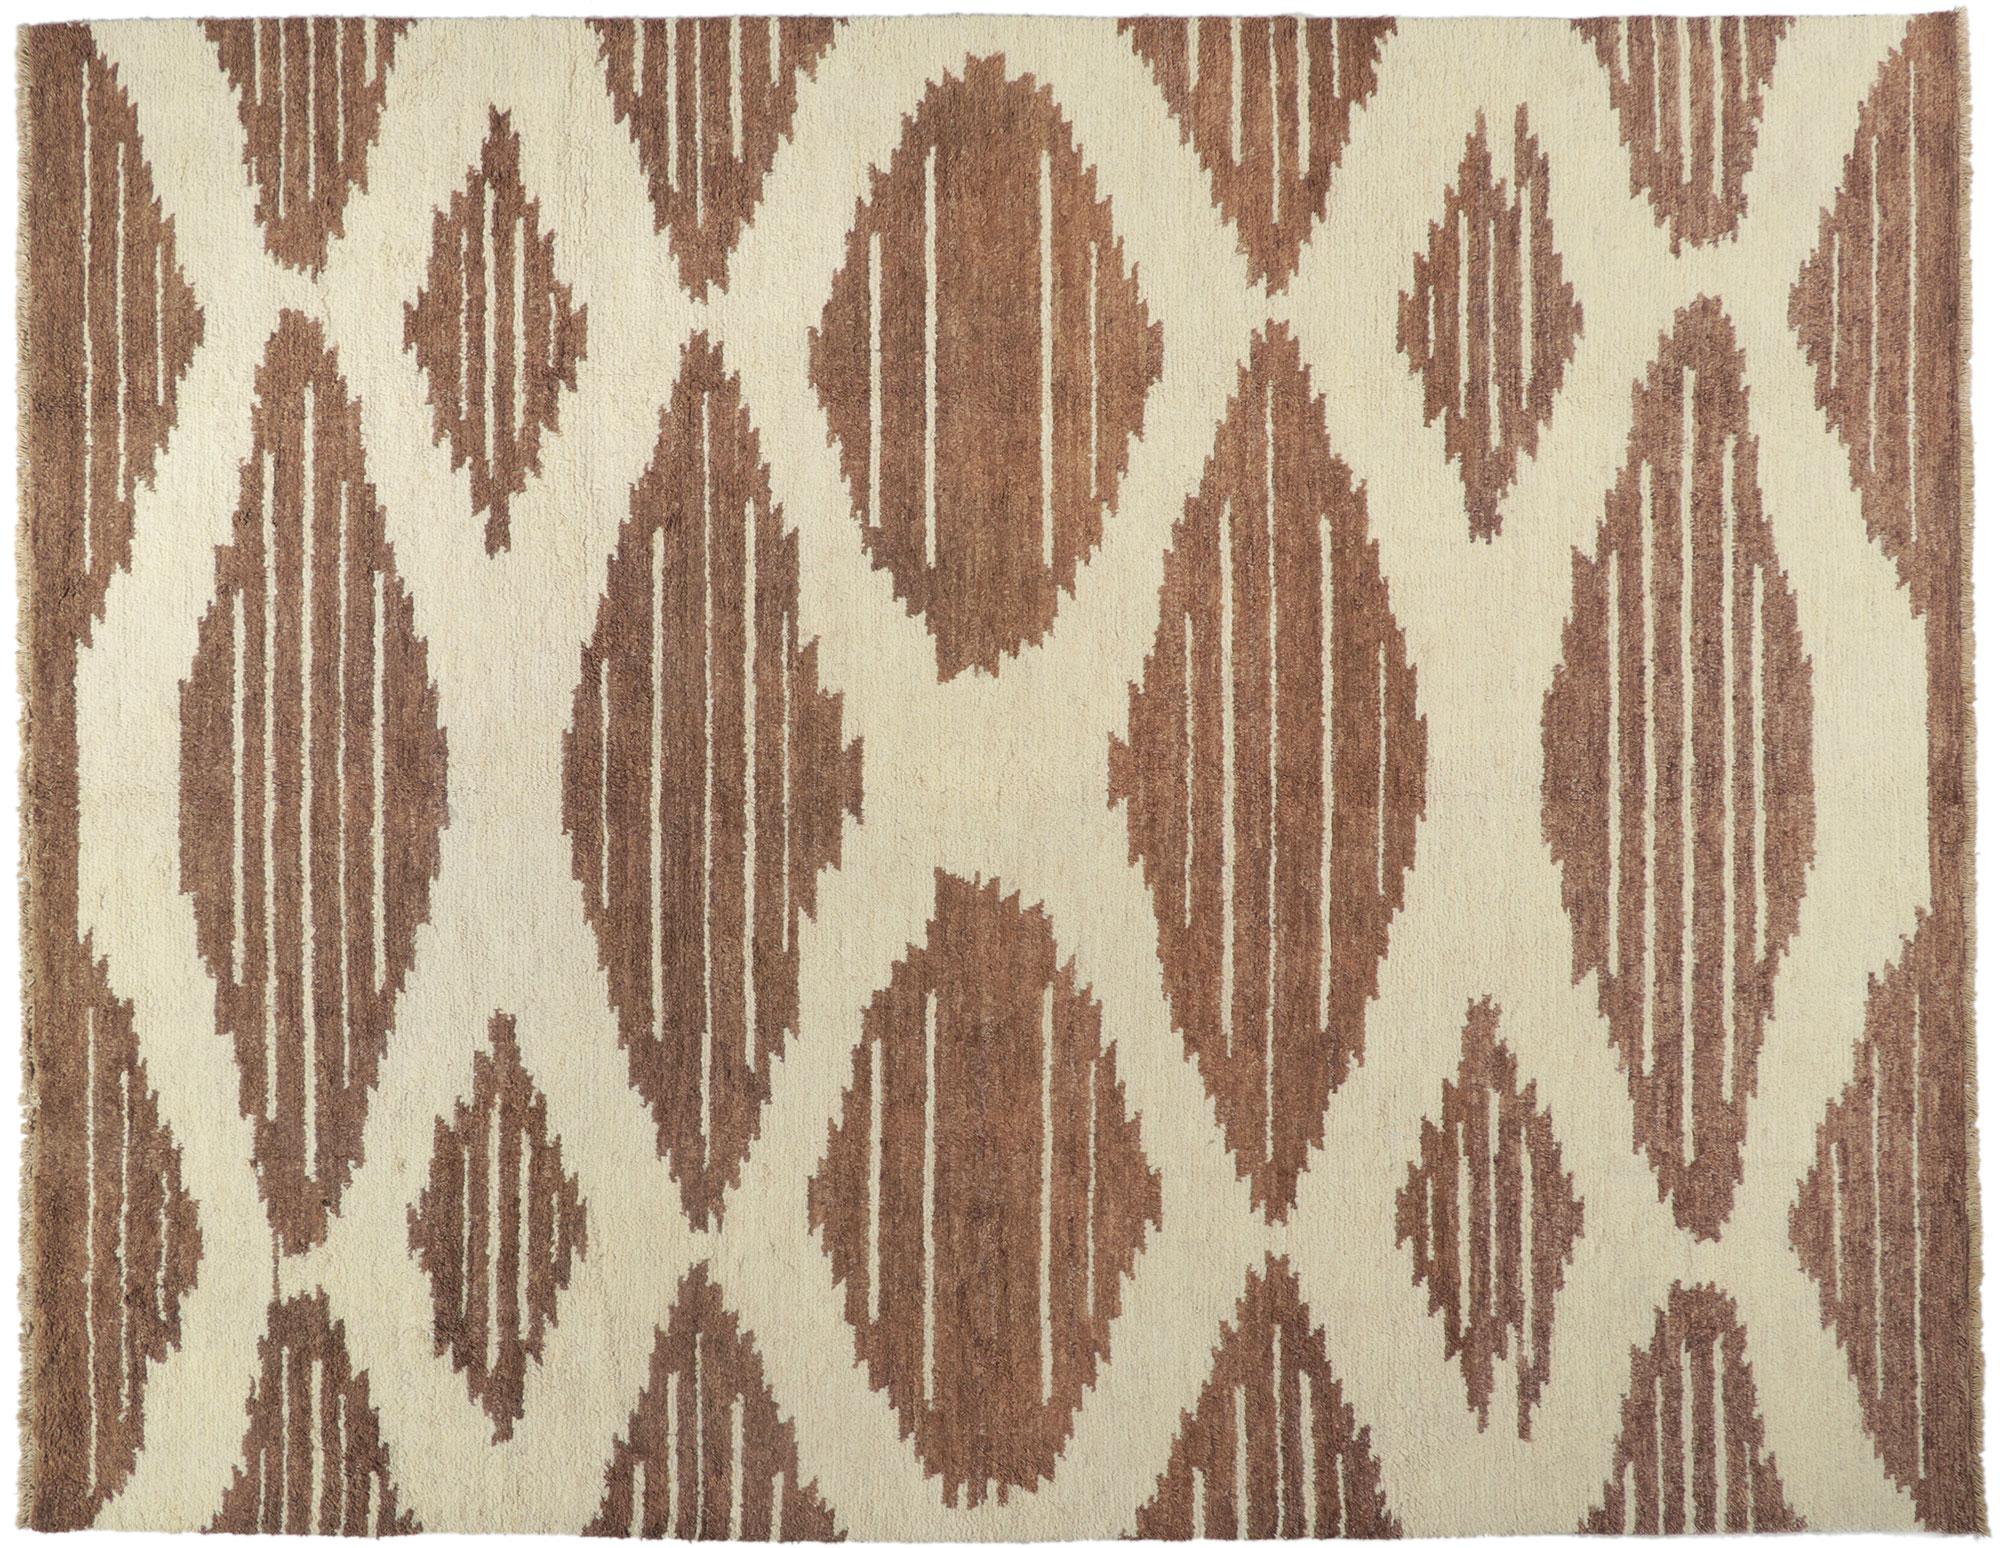 80383 New Modern Marokkanischer Teppich, 10'04 x 13'02. Dieser handgeknüpfte marokkanische Wollteppich versprüht nomadischen Charme mit unglaublichen Details und Texturen und ist eine fesselnde Vision von gewebter Schönheit. Das Navajo-Design und